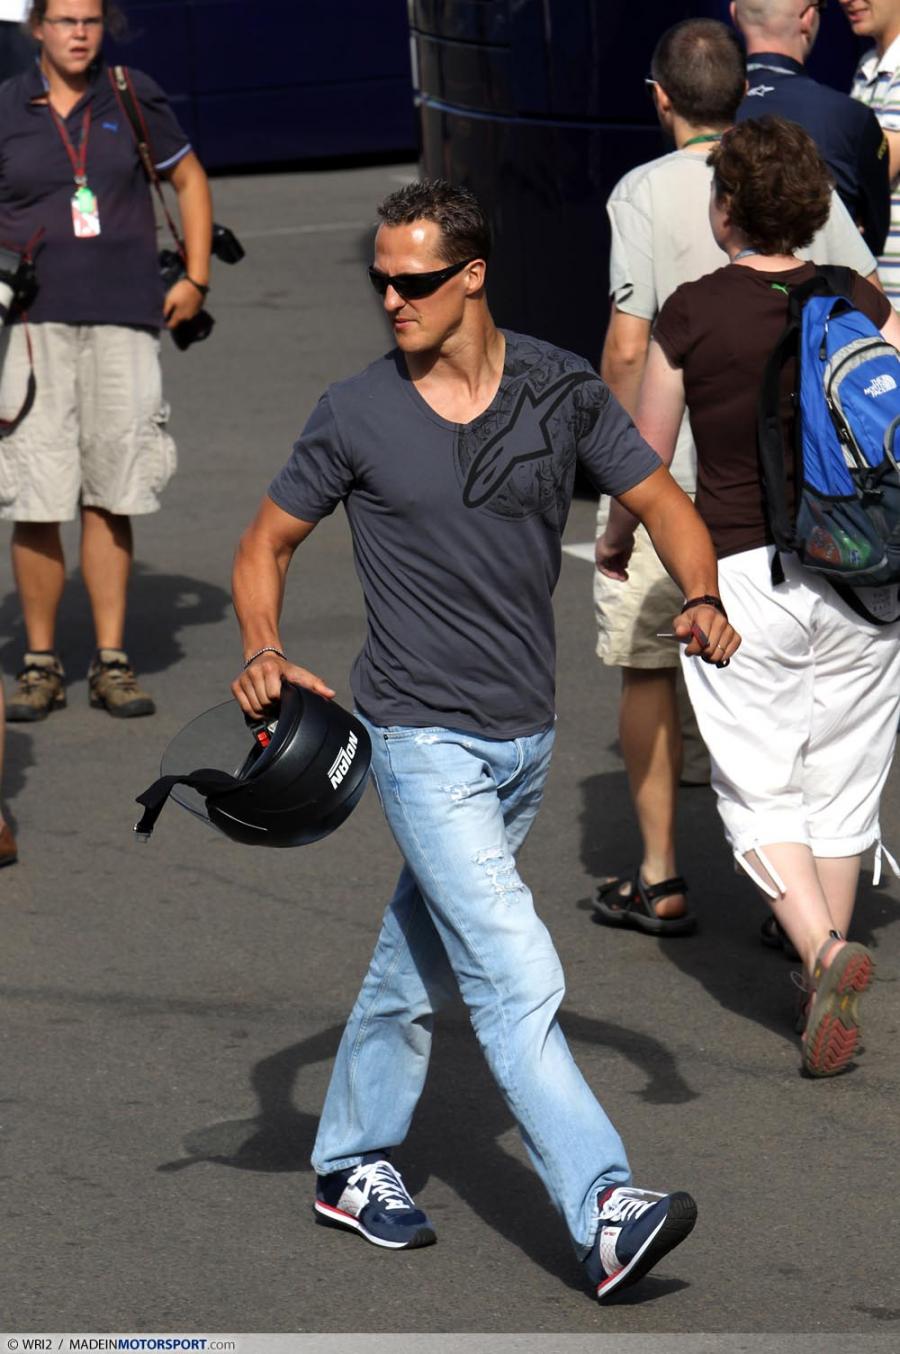 Михаэль Шумахер гуляет на Гран-при Великобритании 2010